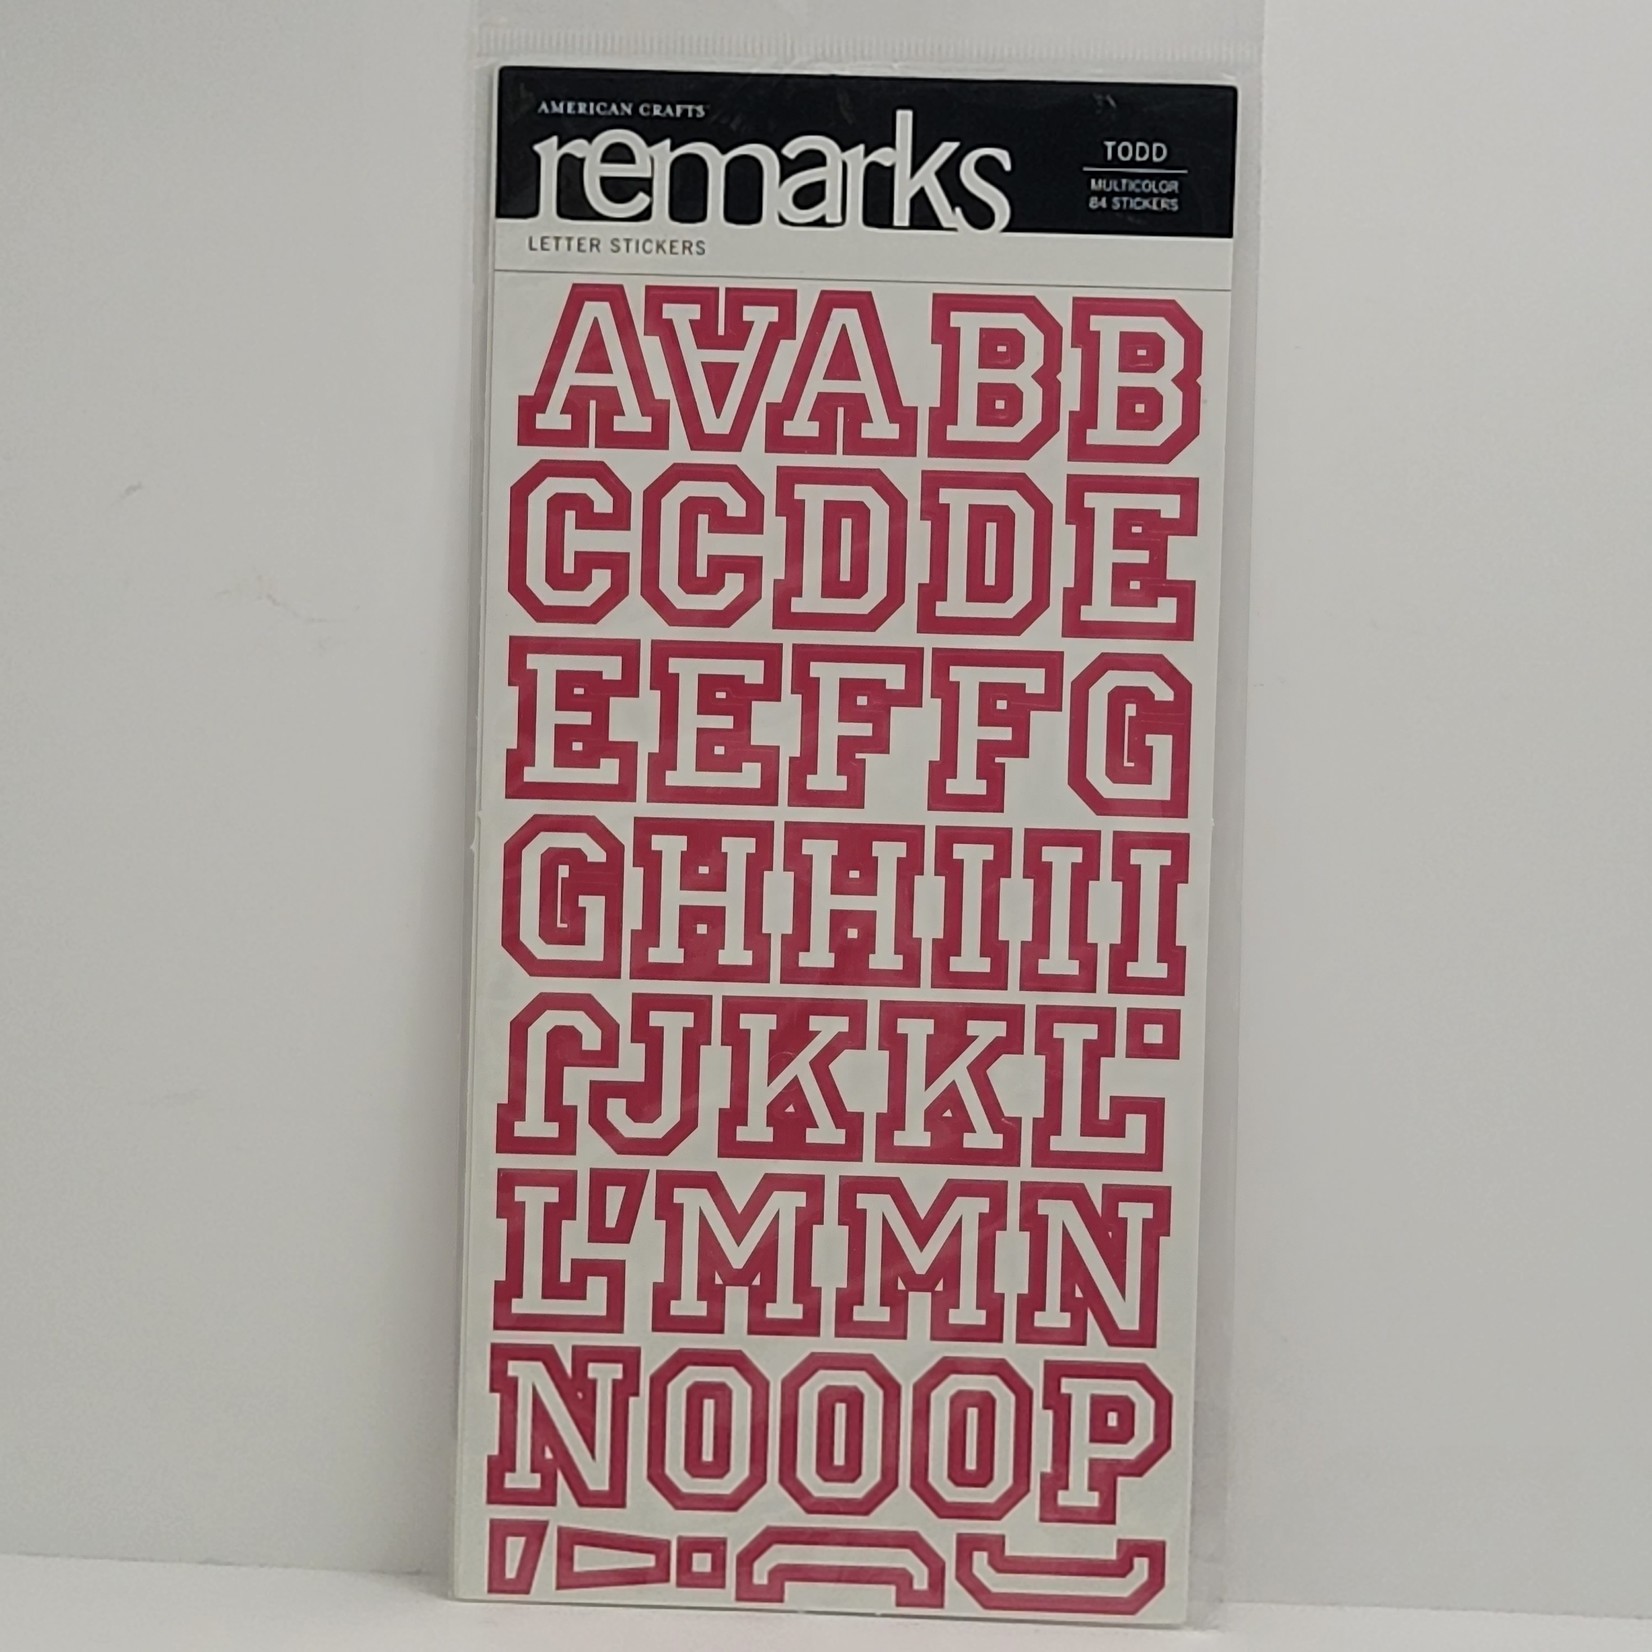 American Crafts Alphabet Sticker Sheet - remarks - Todd